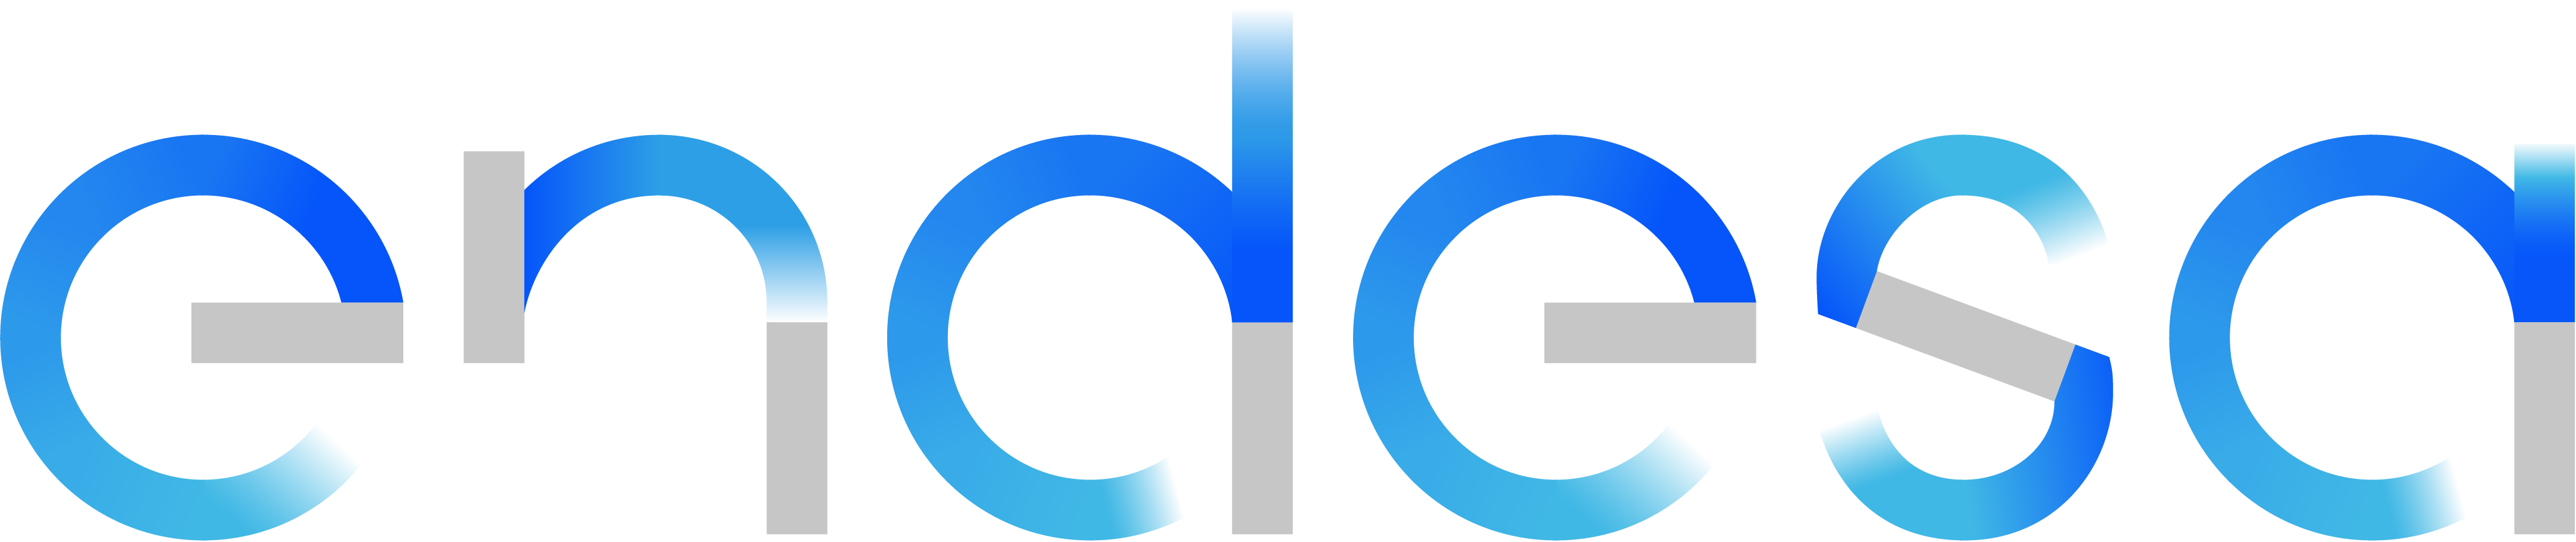 Endesa Logo Primary RGB